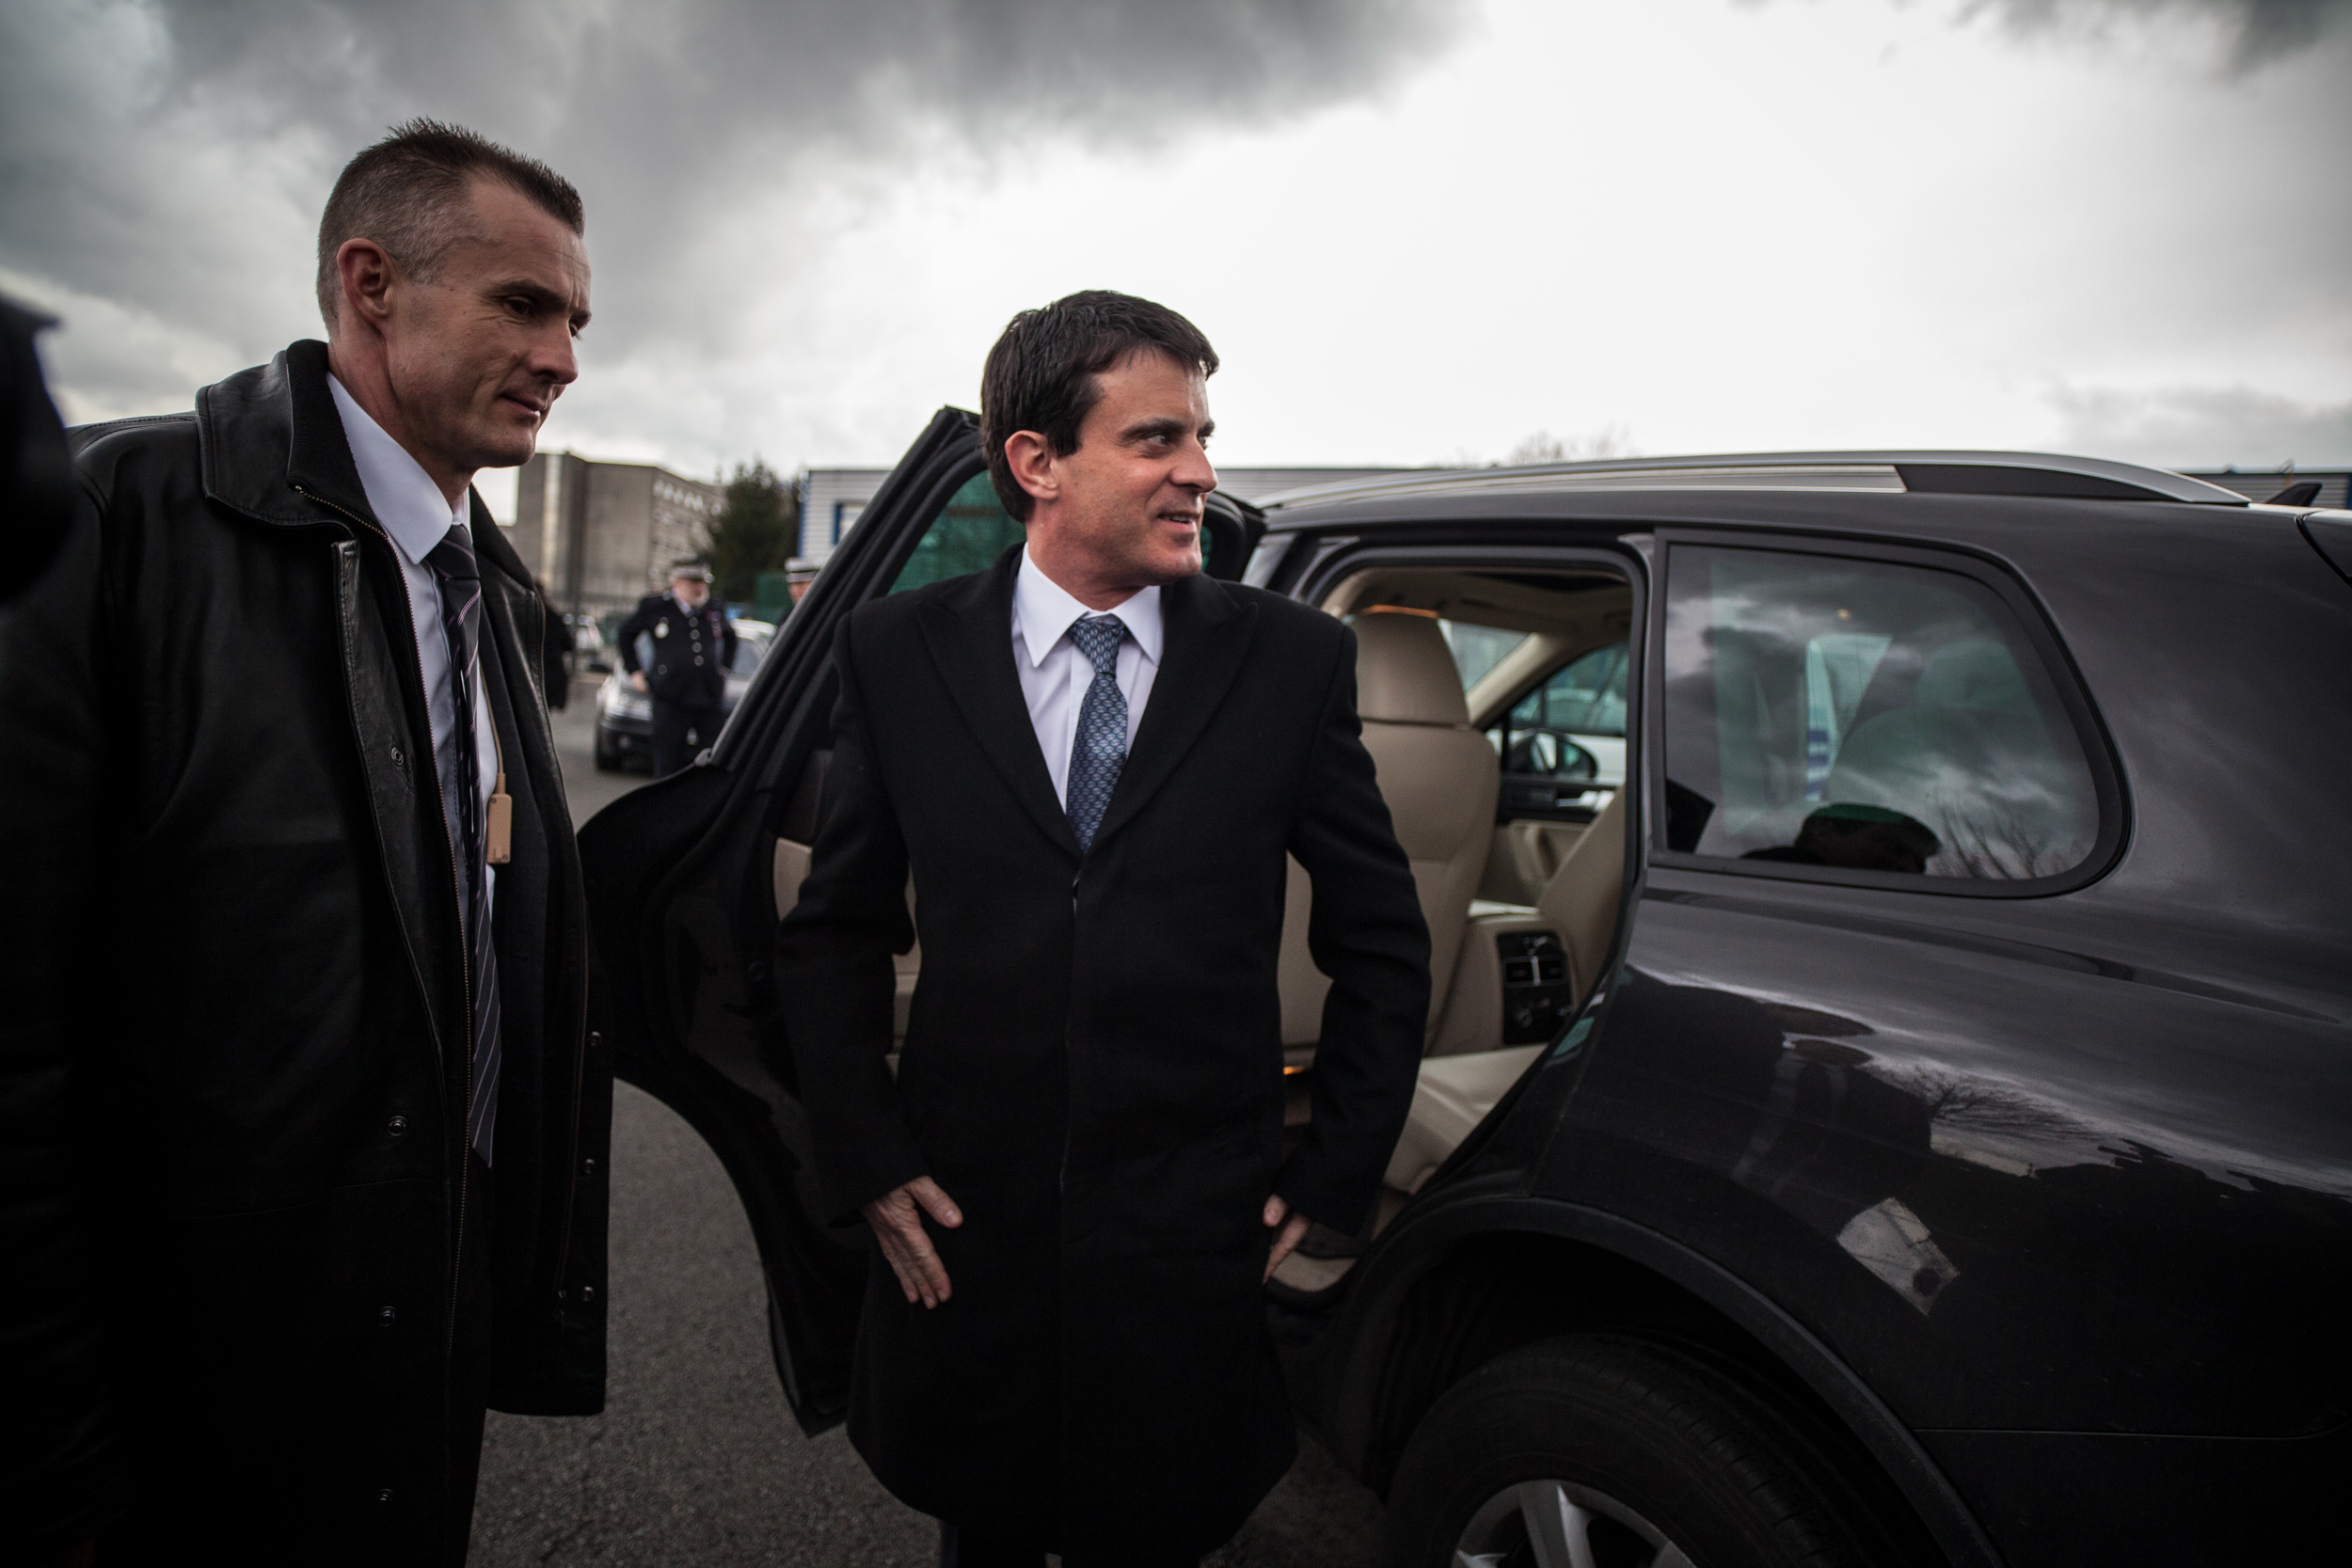  Reportage sur la venue de Manuel Valls, qui n'est encore que ministre de l'intérieur, en mars 2013. Le ministre vient à Tourcoing (59) pour promouvoir la collaboration avec son homologue belge dans la lutte contre la délinquance. 